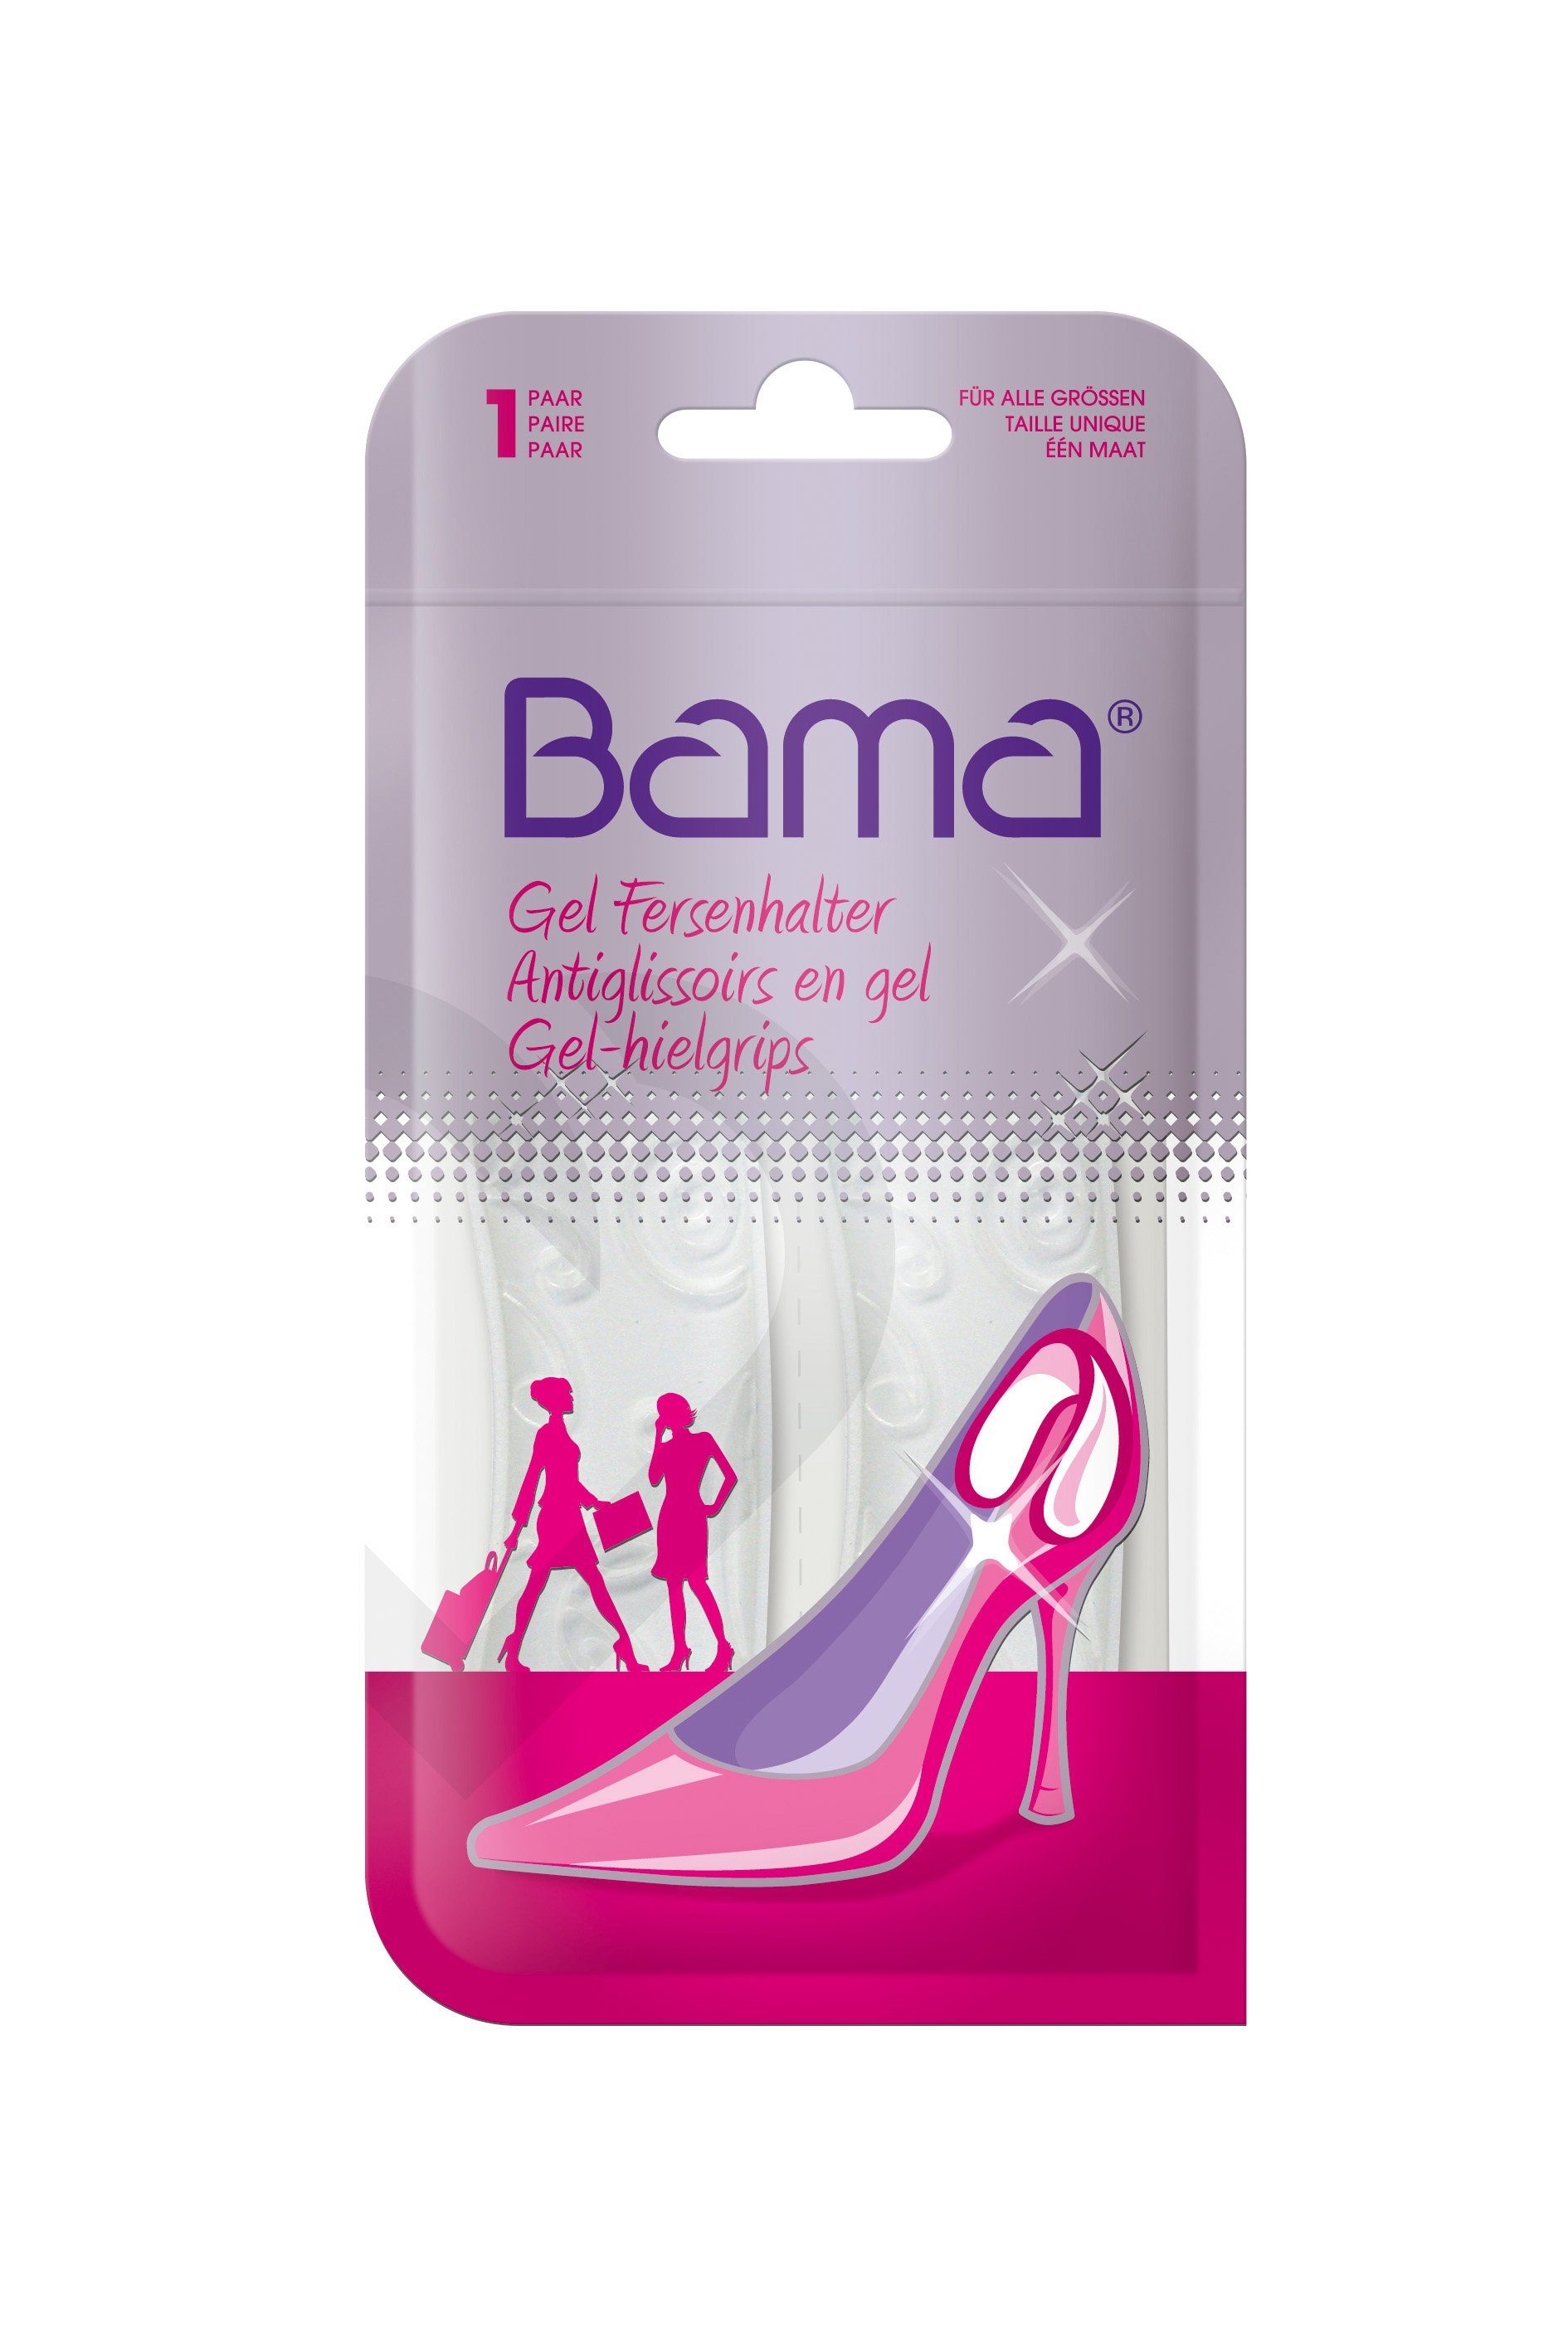 BAMA Group Gelpolster Gel Fersenhalter - polstert die Fersen und verhindert das Rutschen und Reiben | Einlegesohlen